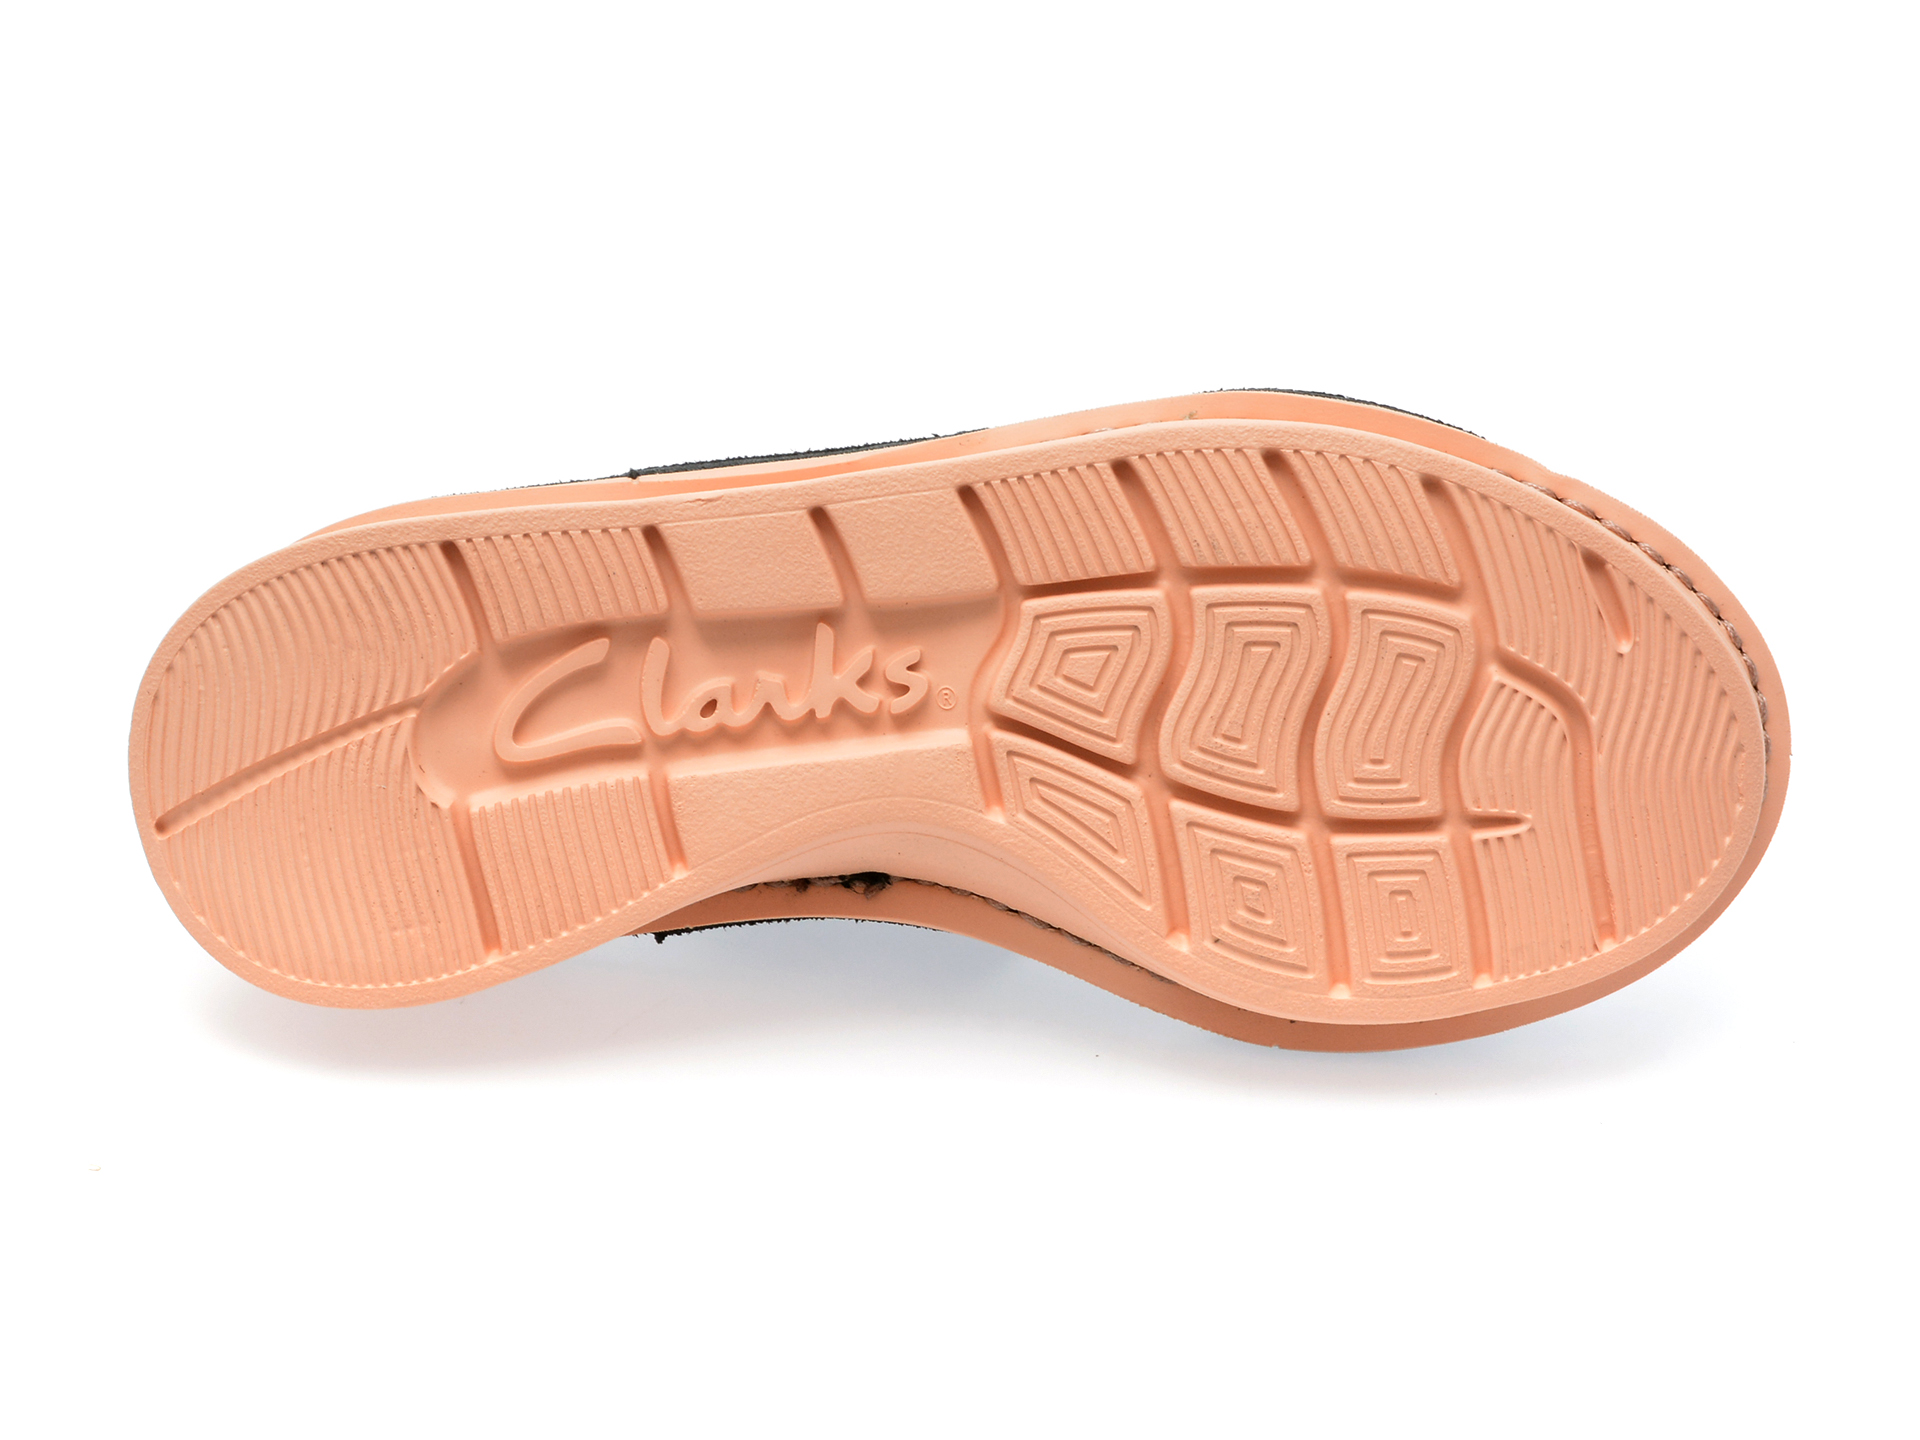 Sandale CLARKS negre, VELHILL STRAP 01-N, din piele naturala